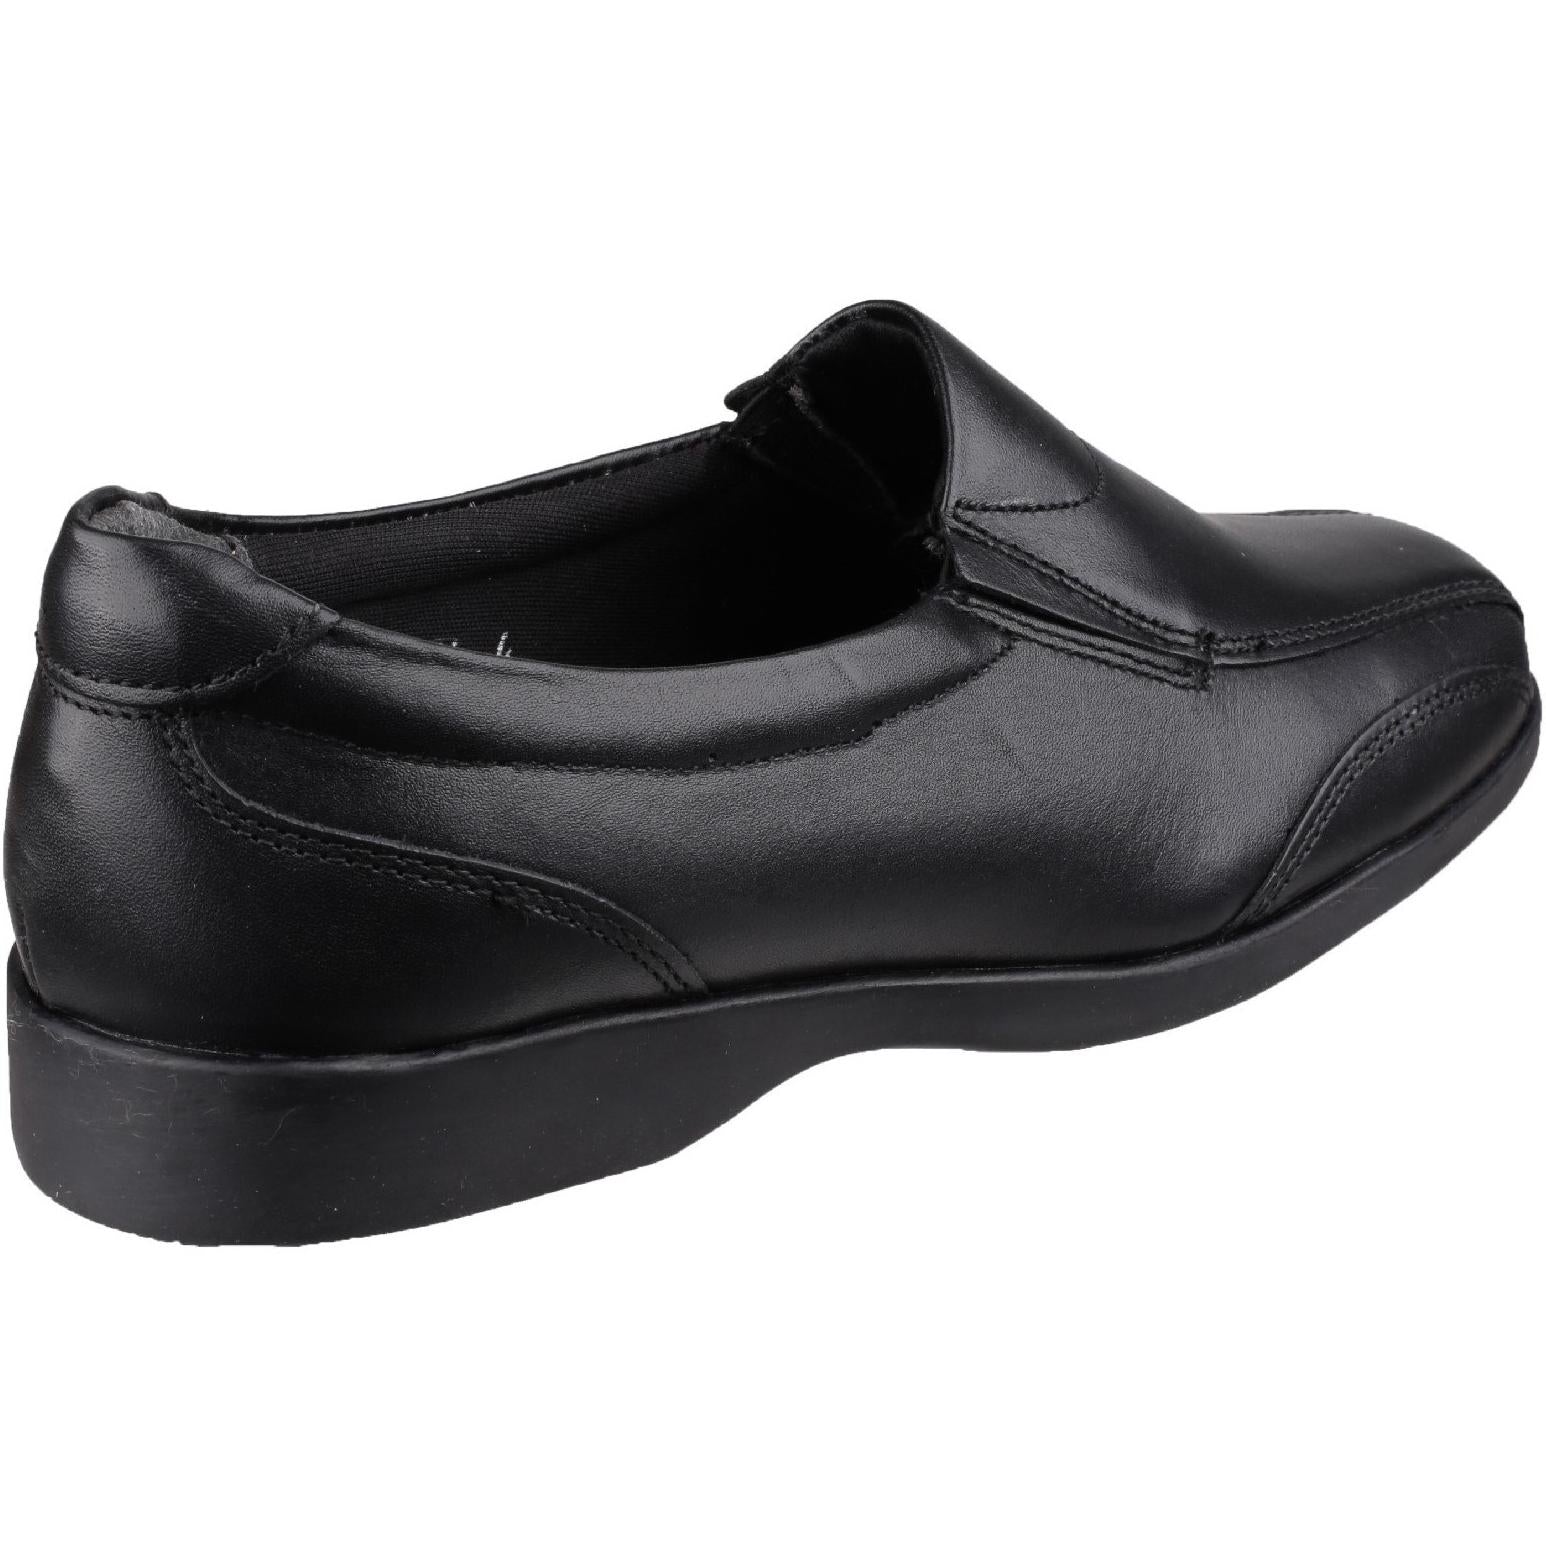 Amblers Merton Ladies Slip-On Shoe